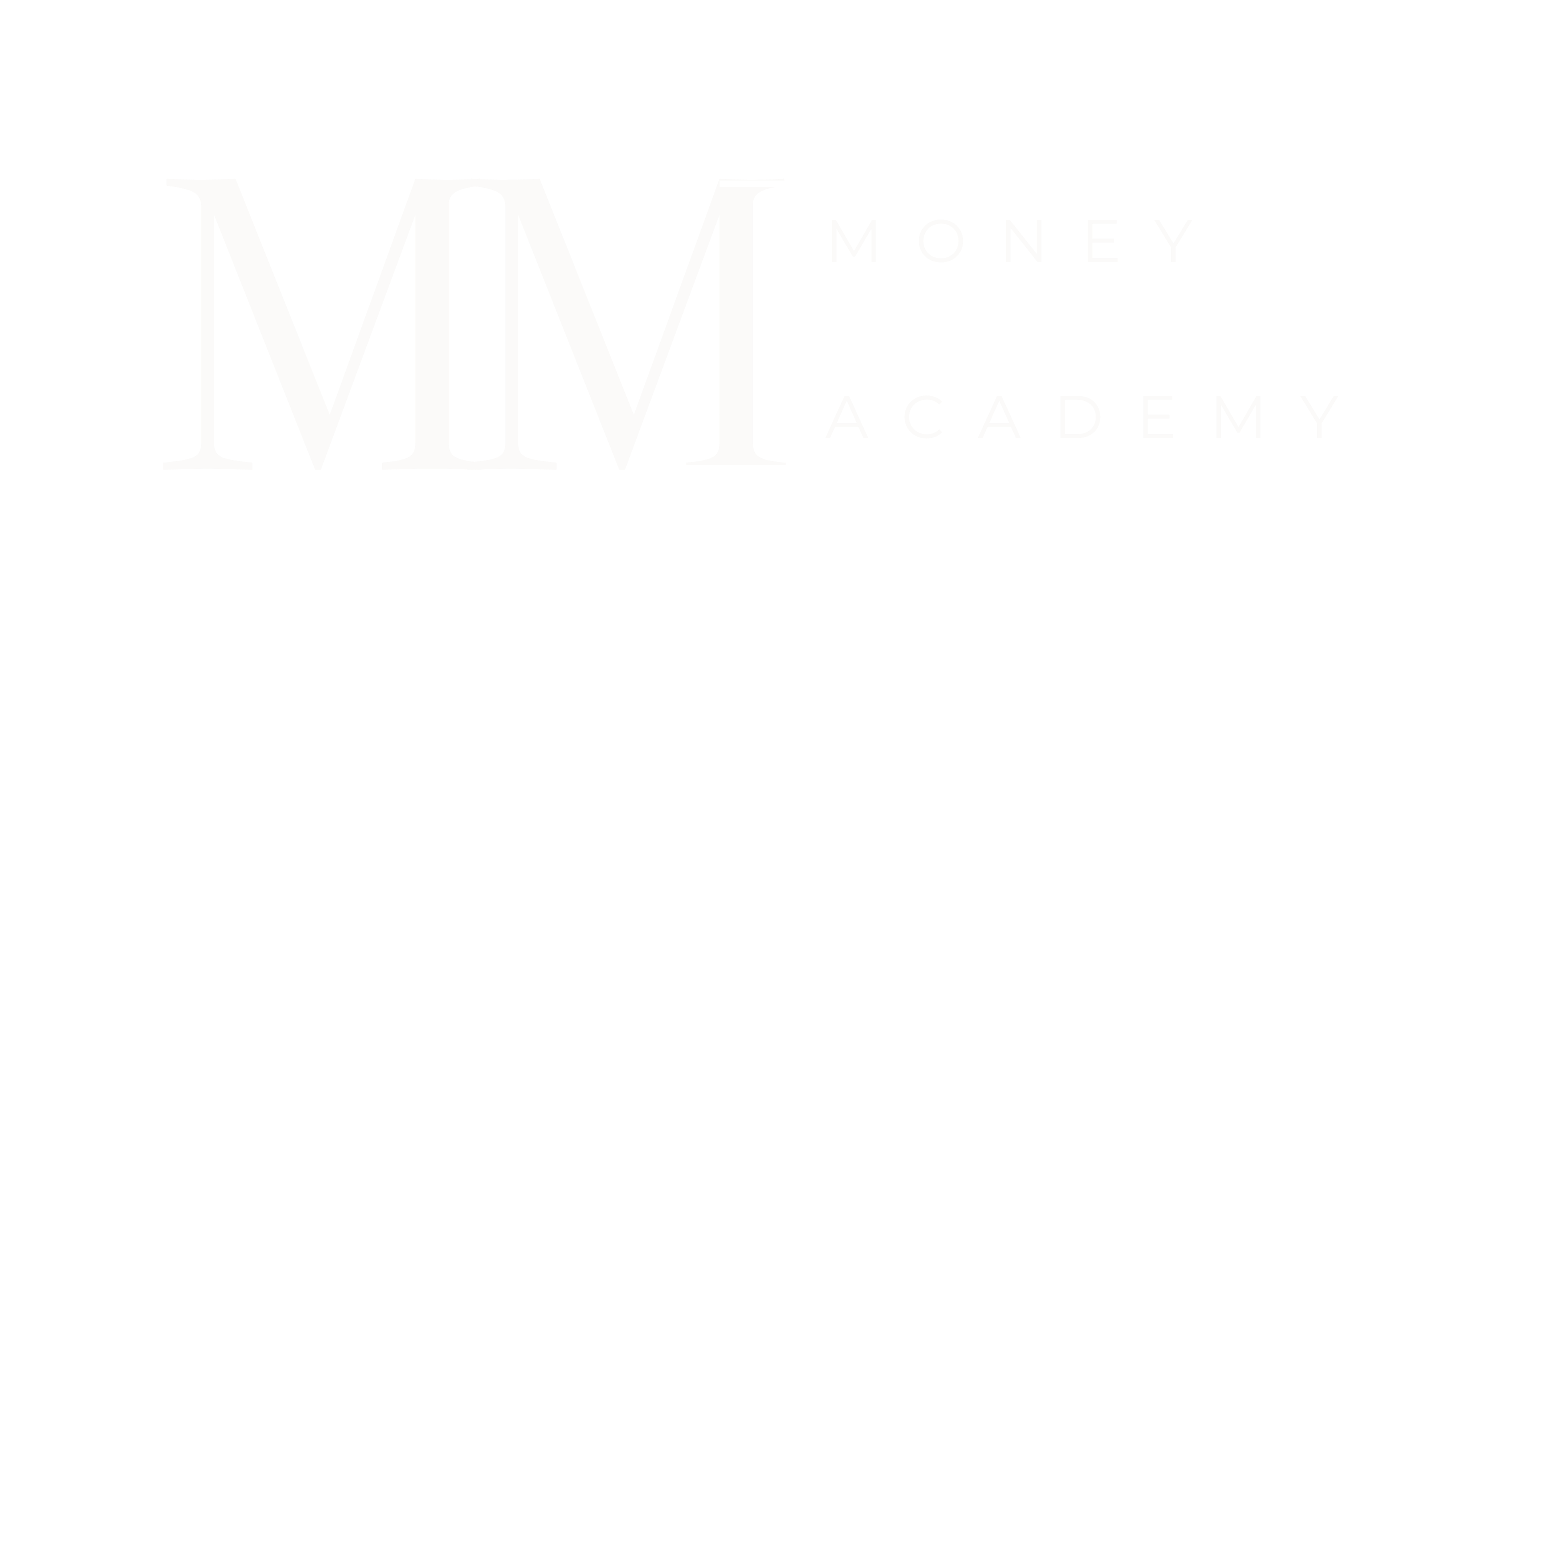 Money Monster University